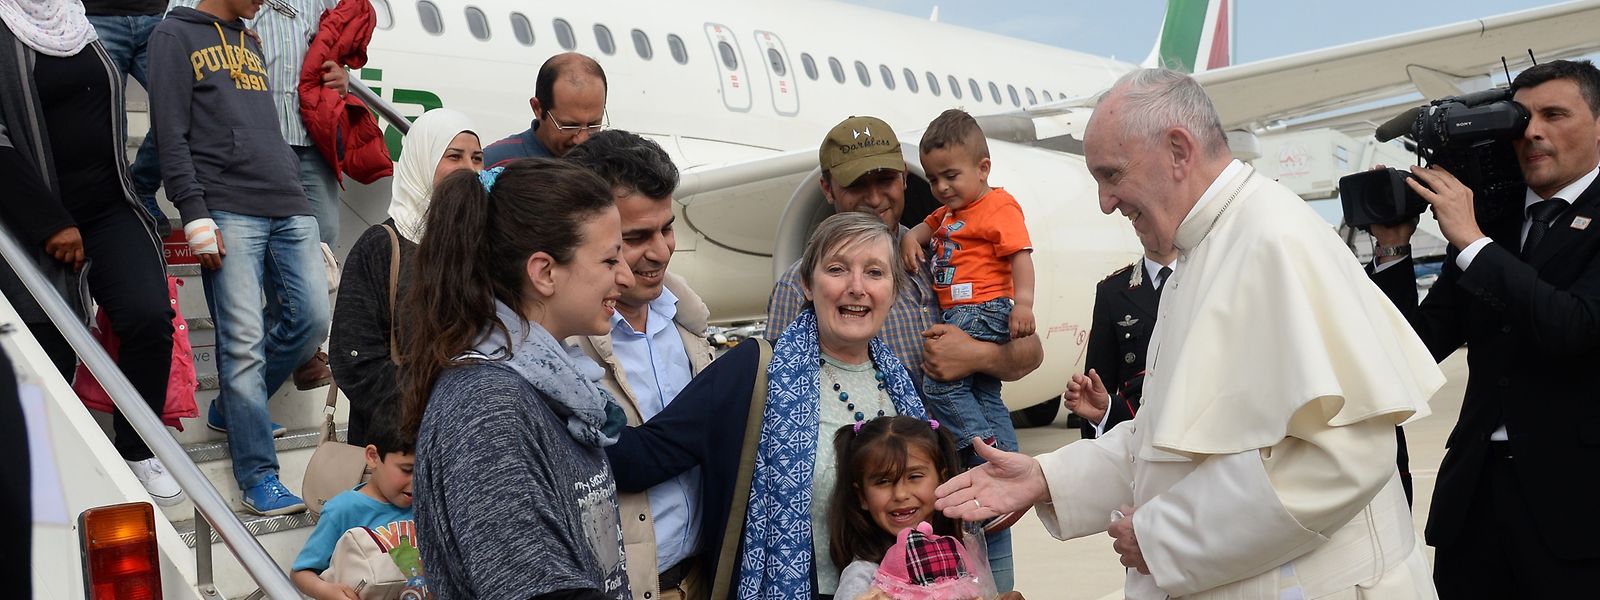 2016 traf Papst Franziskus Flüchtlinge auf der griechischen Insel Lesbos. Und auch dieses Mal wird das Thema Migration seine Auslandsreise in Zypern und Griechenland bestimmen.